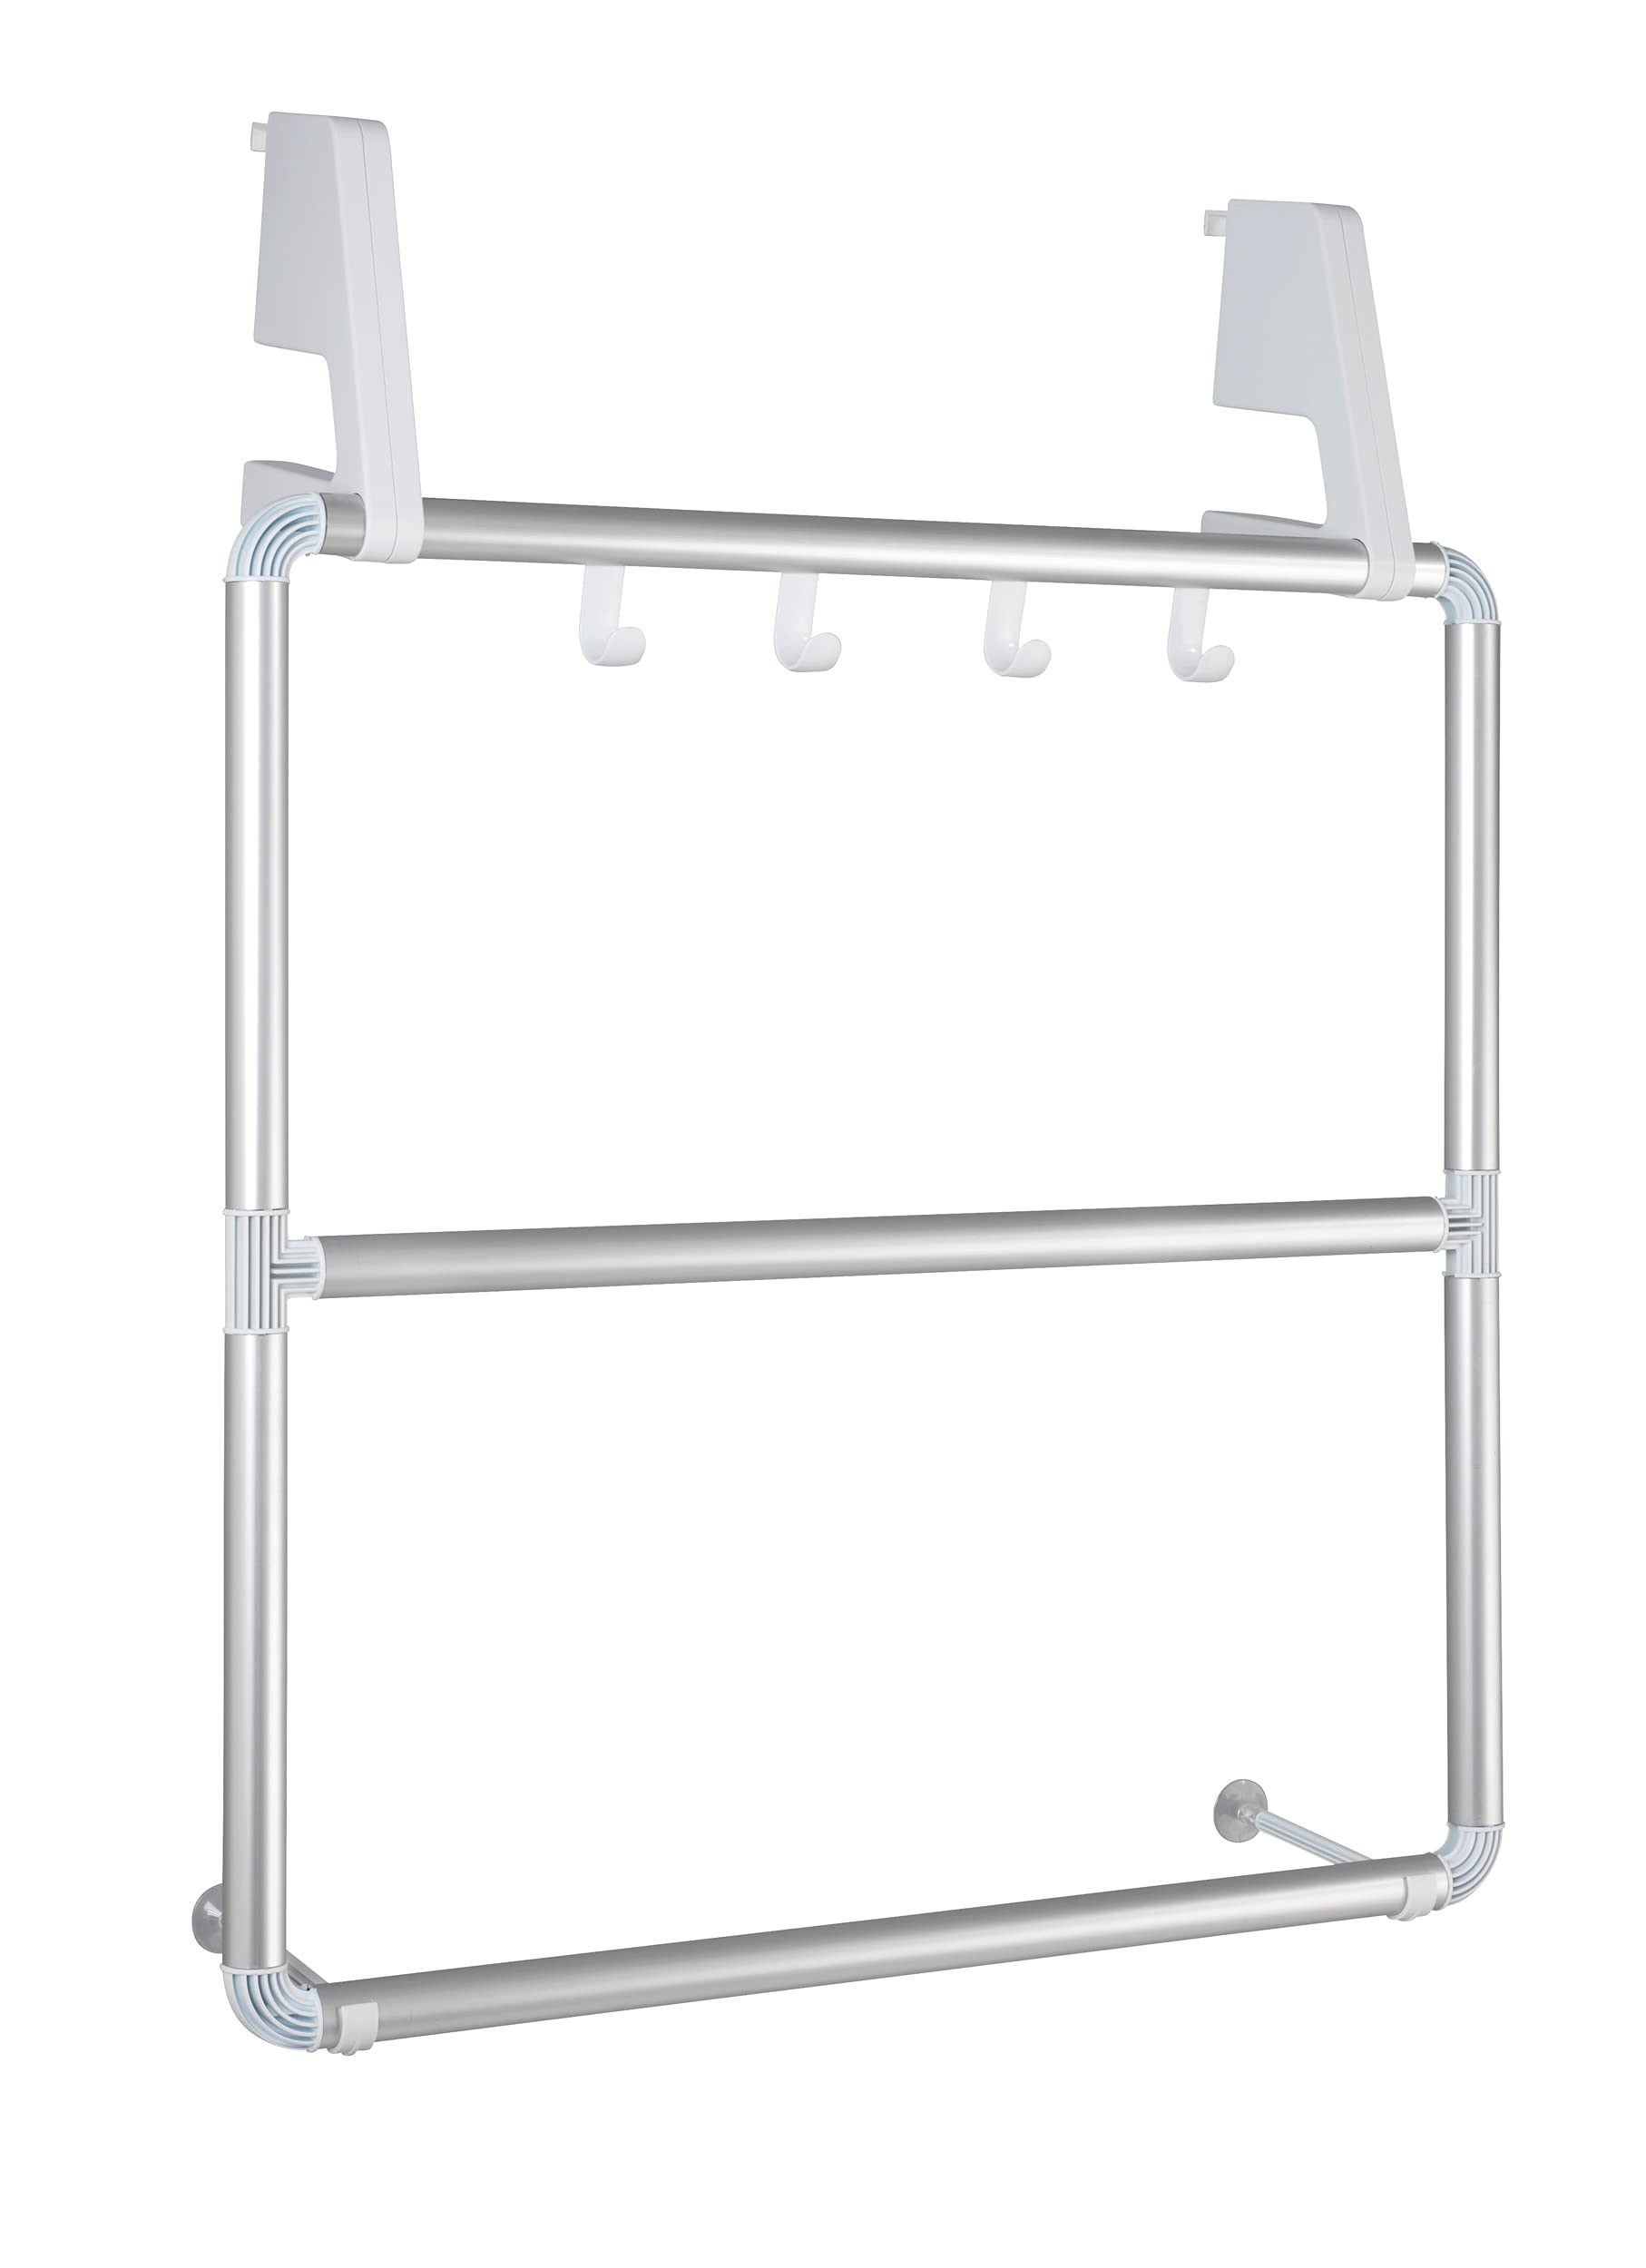 WENKO Handtuchhalter für Tür und Duschkabine Compact - mit 3 Querstangen und 4 Haken, Aluminium, 62.5 x 78 x 14.5 cm, Silber matt